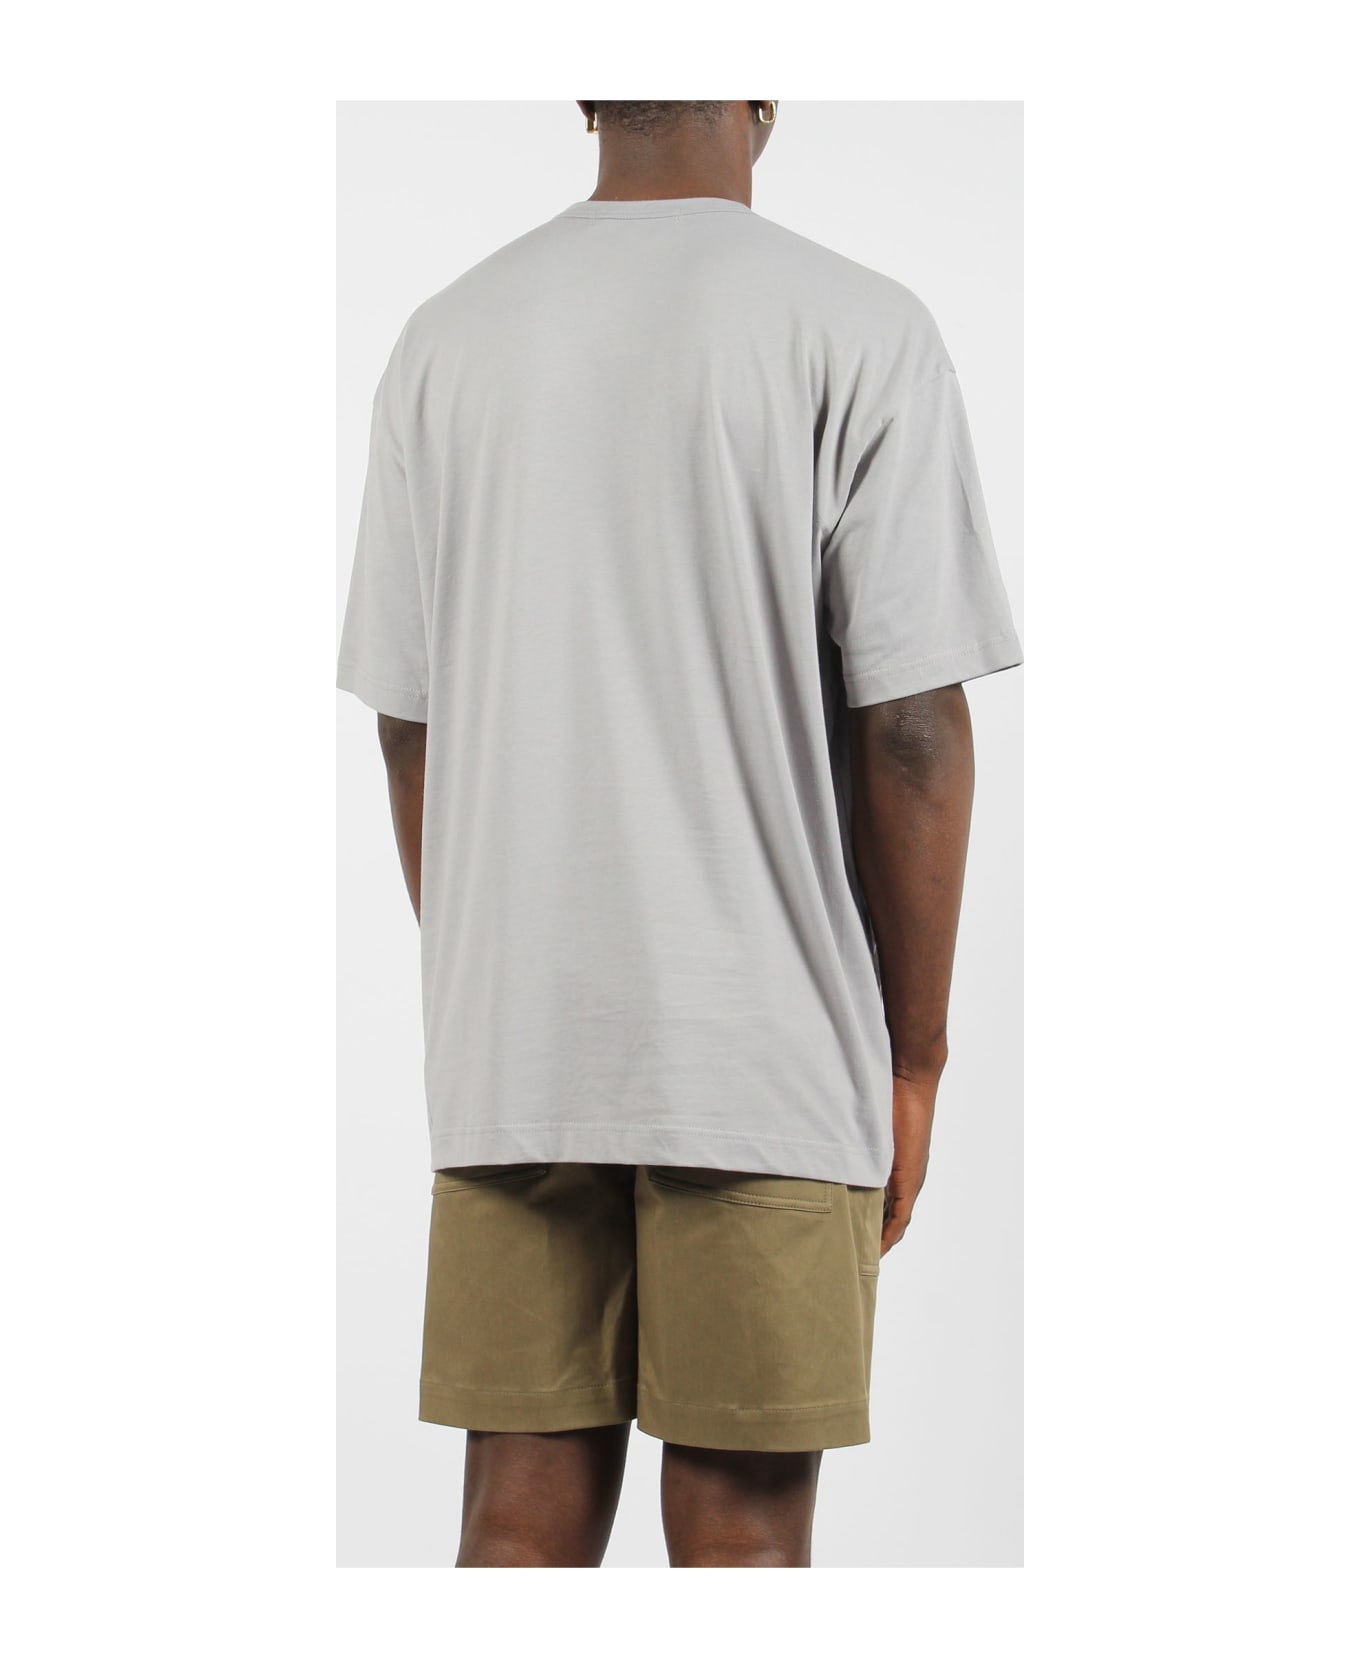 Comme des Garçons Shirt Jersey Cotton Basic T-shirt - Grey シャツ